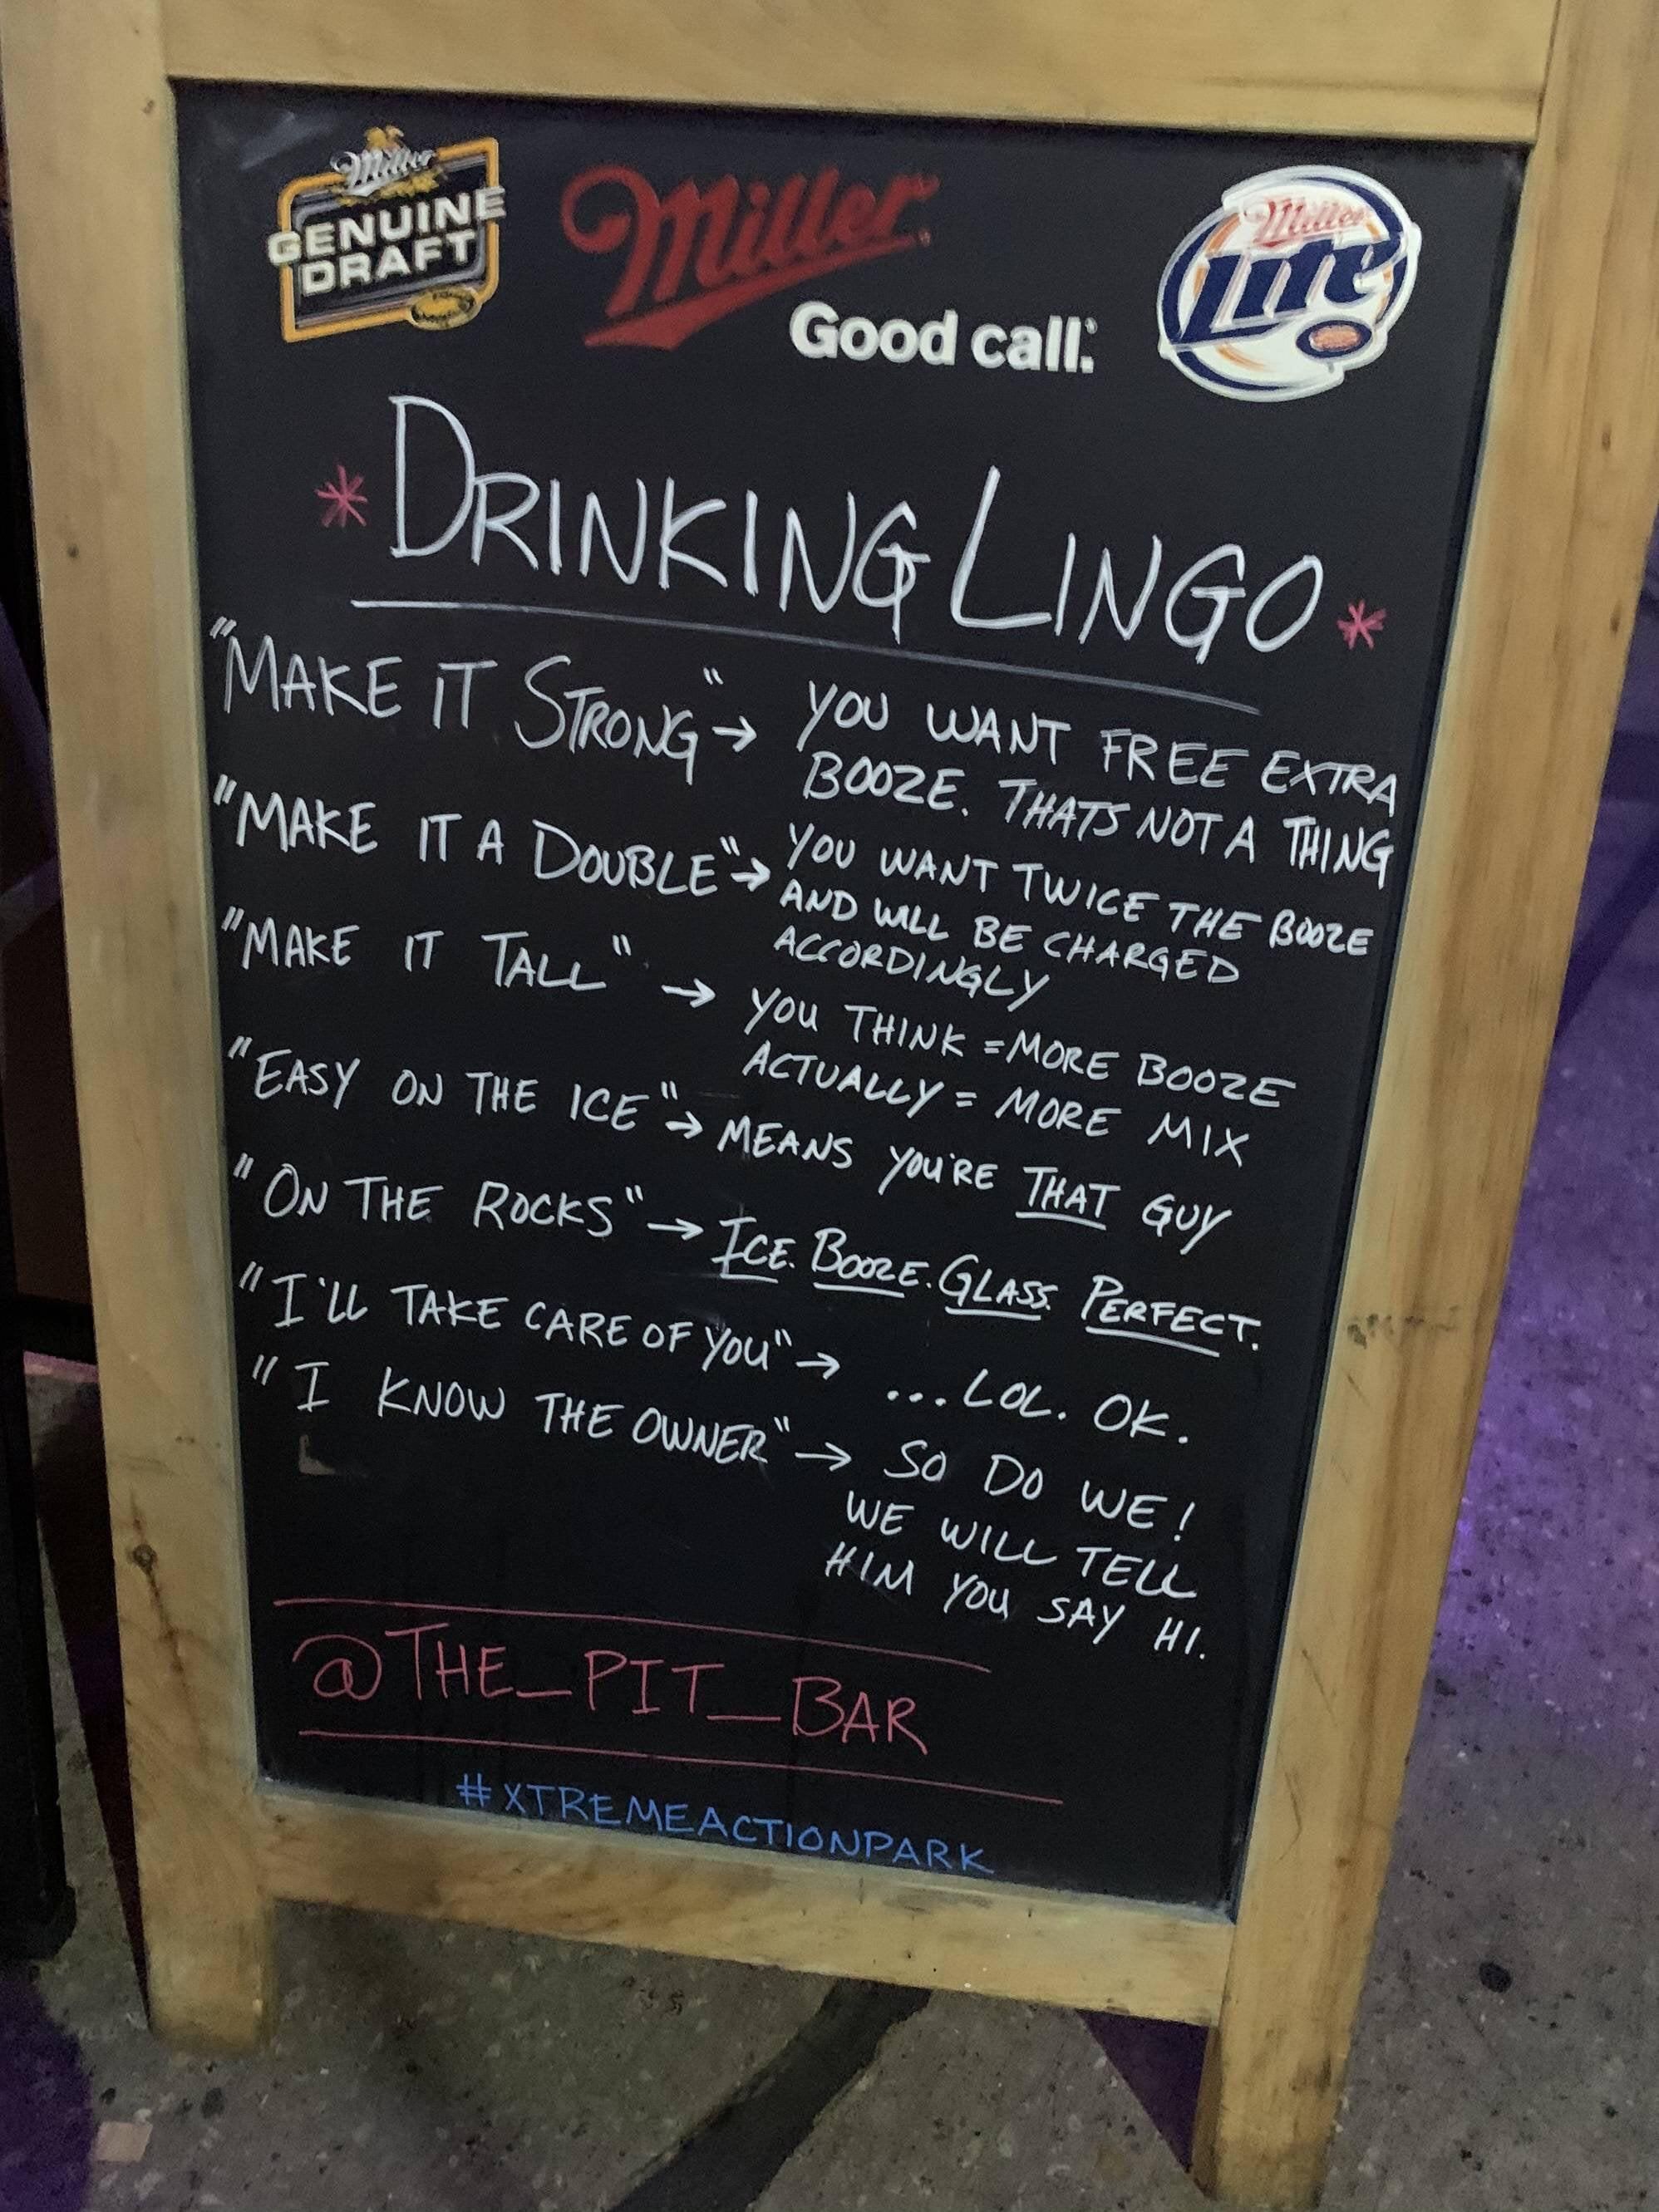 A sign at a bar.